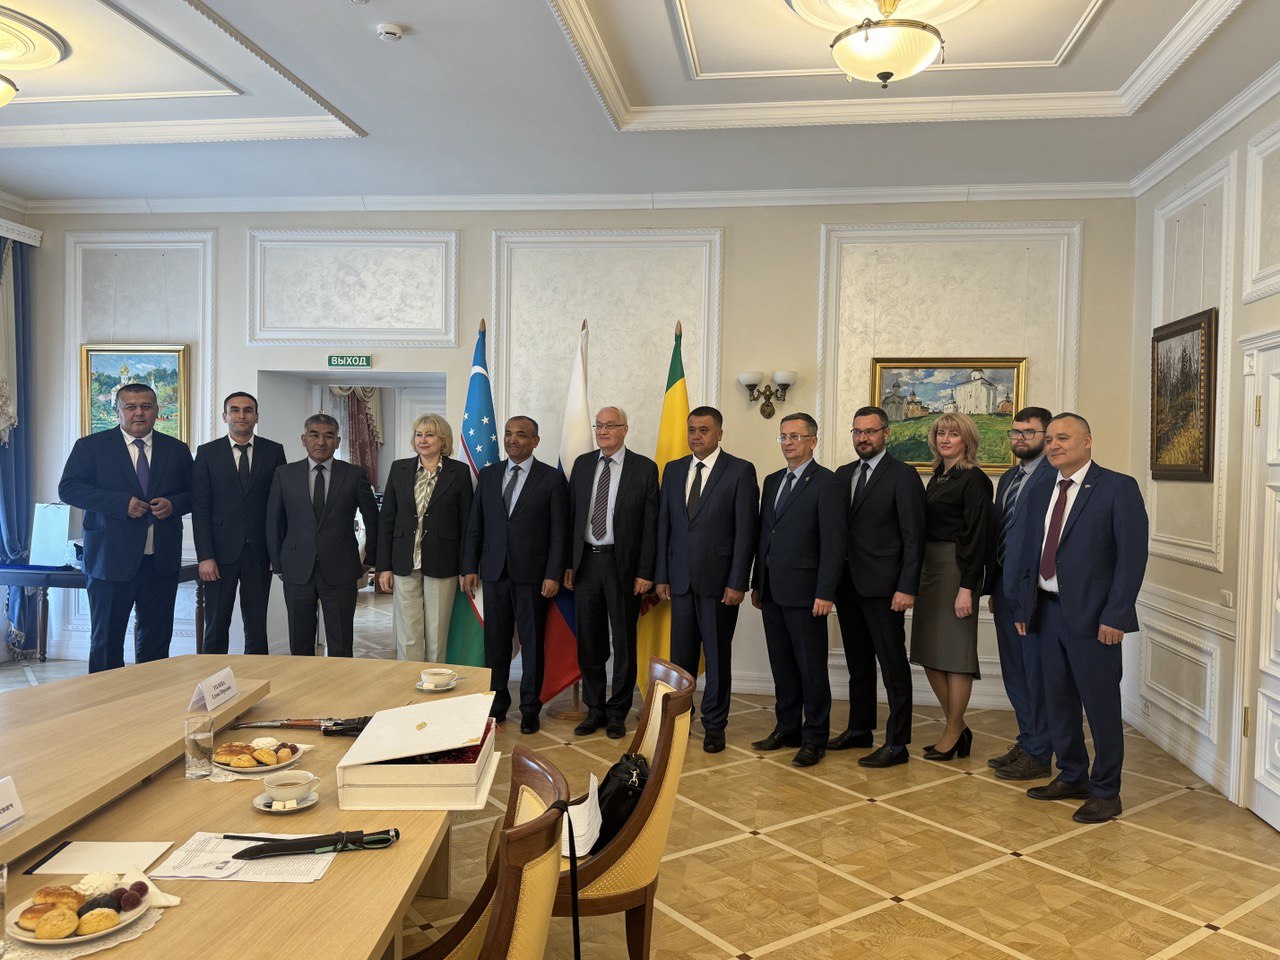 Состоялся официальный визит делегации Андижанской области Республики Узбекистан в Пензенскую область